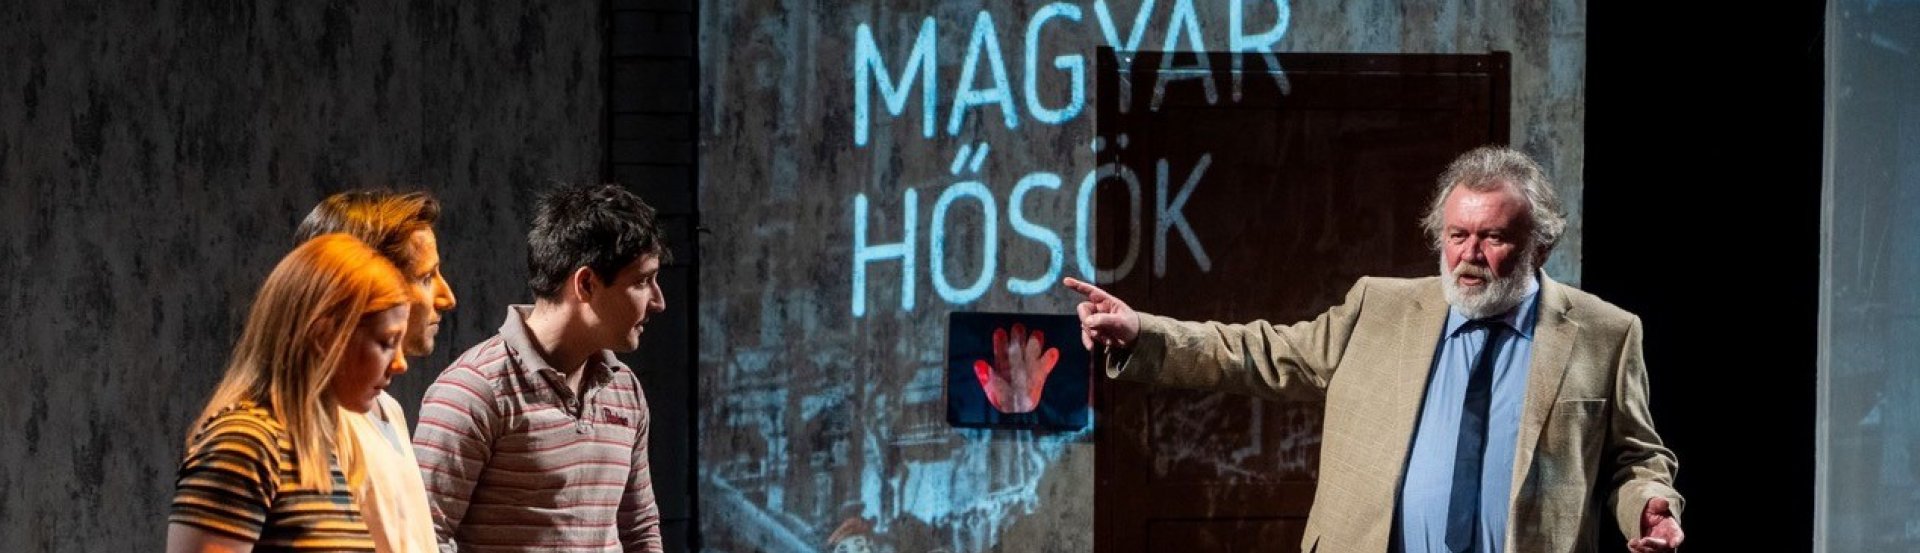 Magyar Hősök című előadás kiemelt képe a Pécsi Nemzeti Színházból